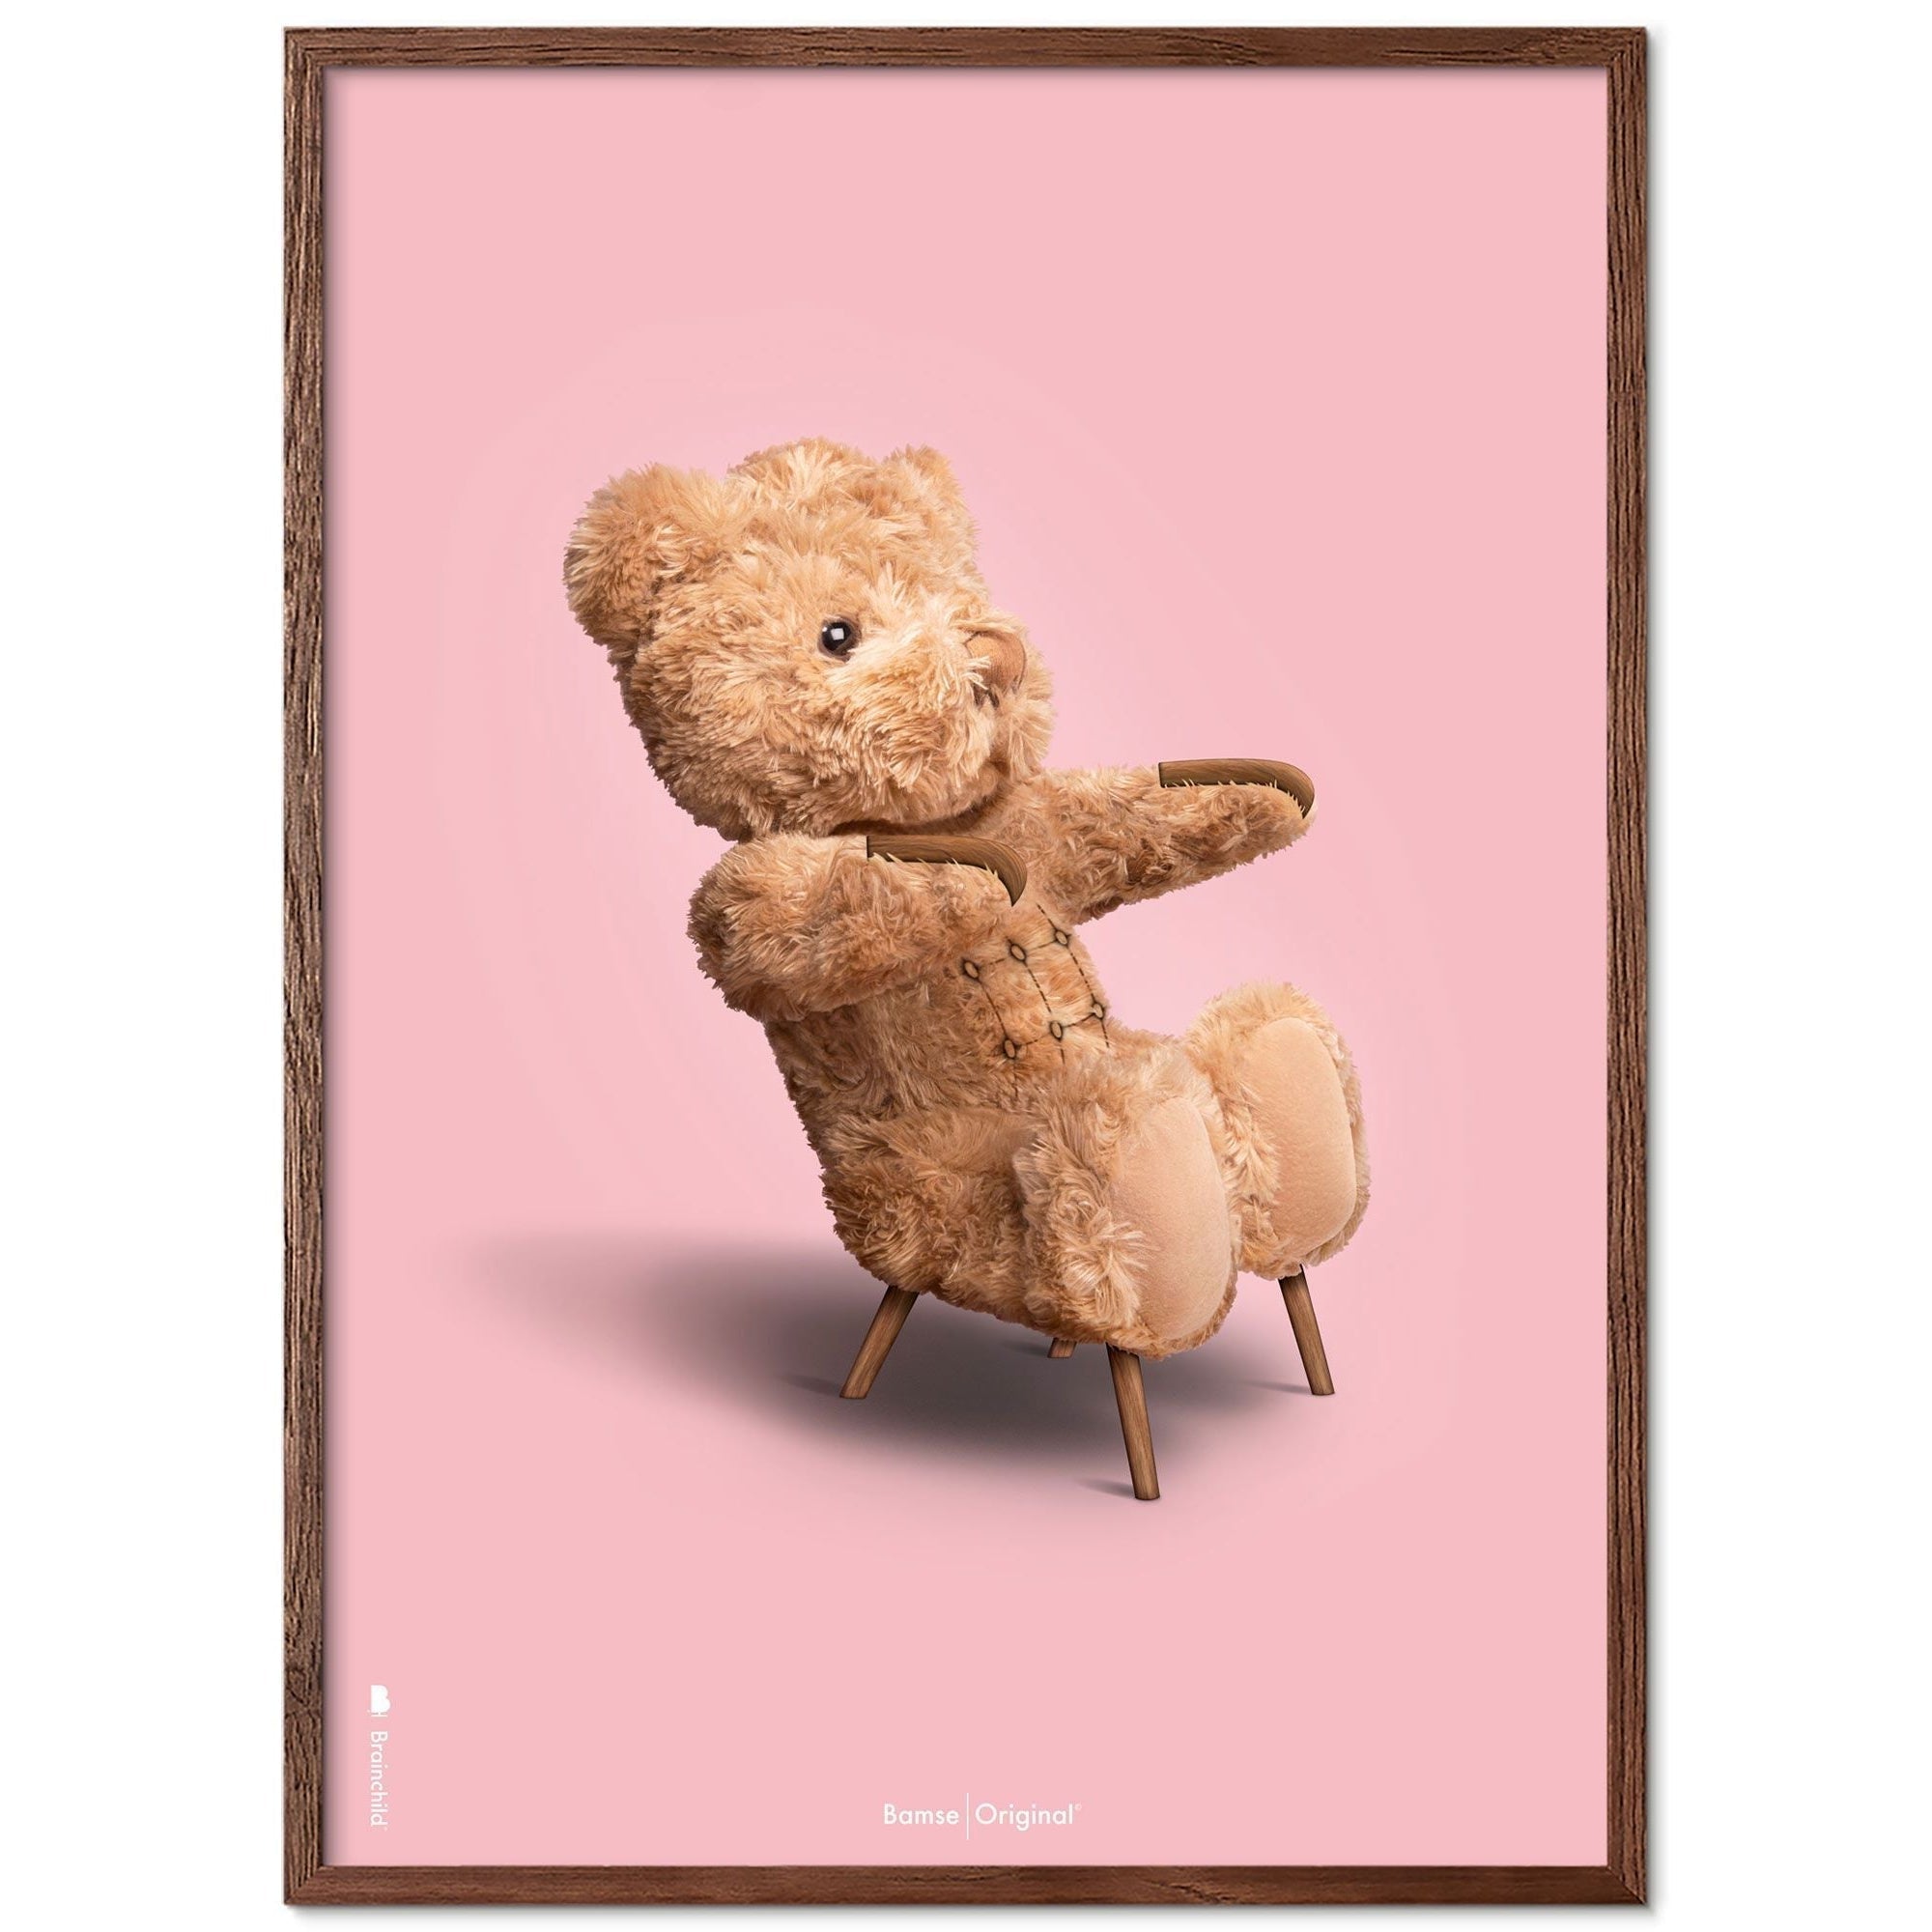 Brainchild Teddy Bear Classic Poster Frame lavet af Dark Wood Ram 50x70 cm, lyserød baggrund